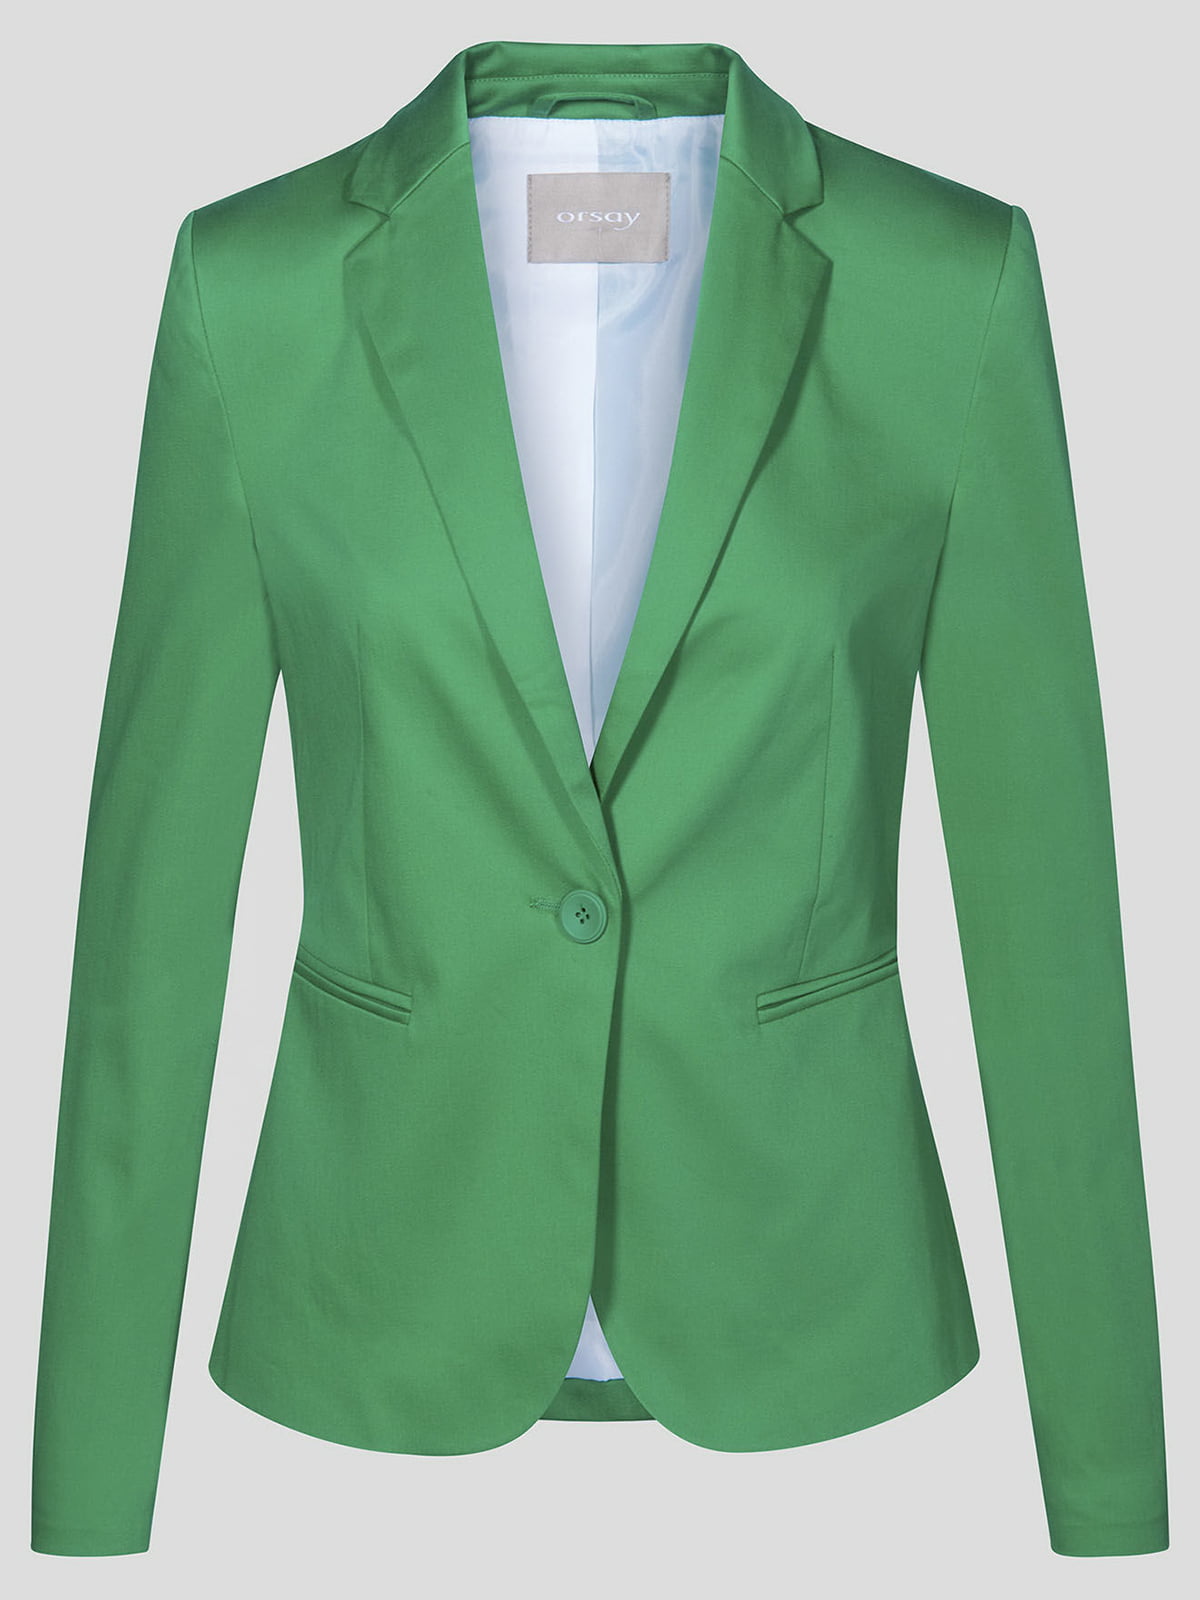 Ярко зеленый пиджак